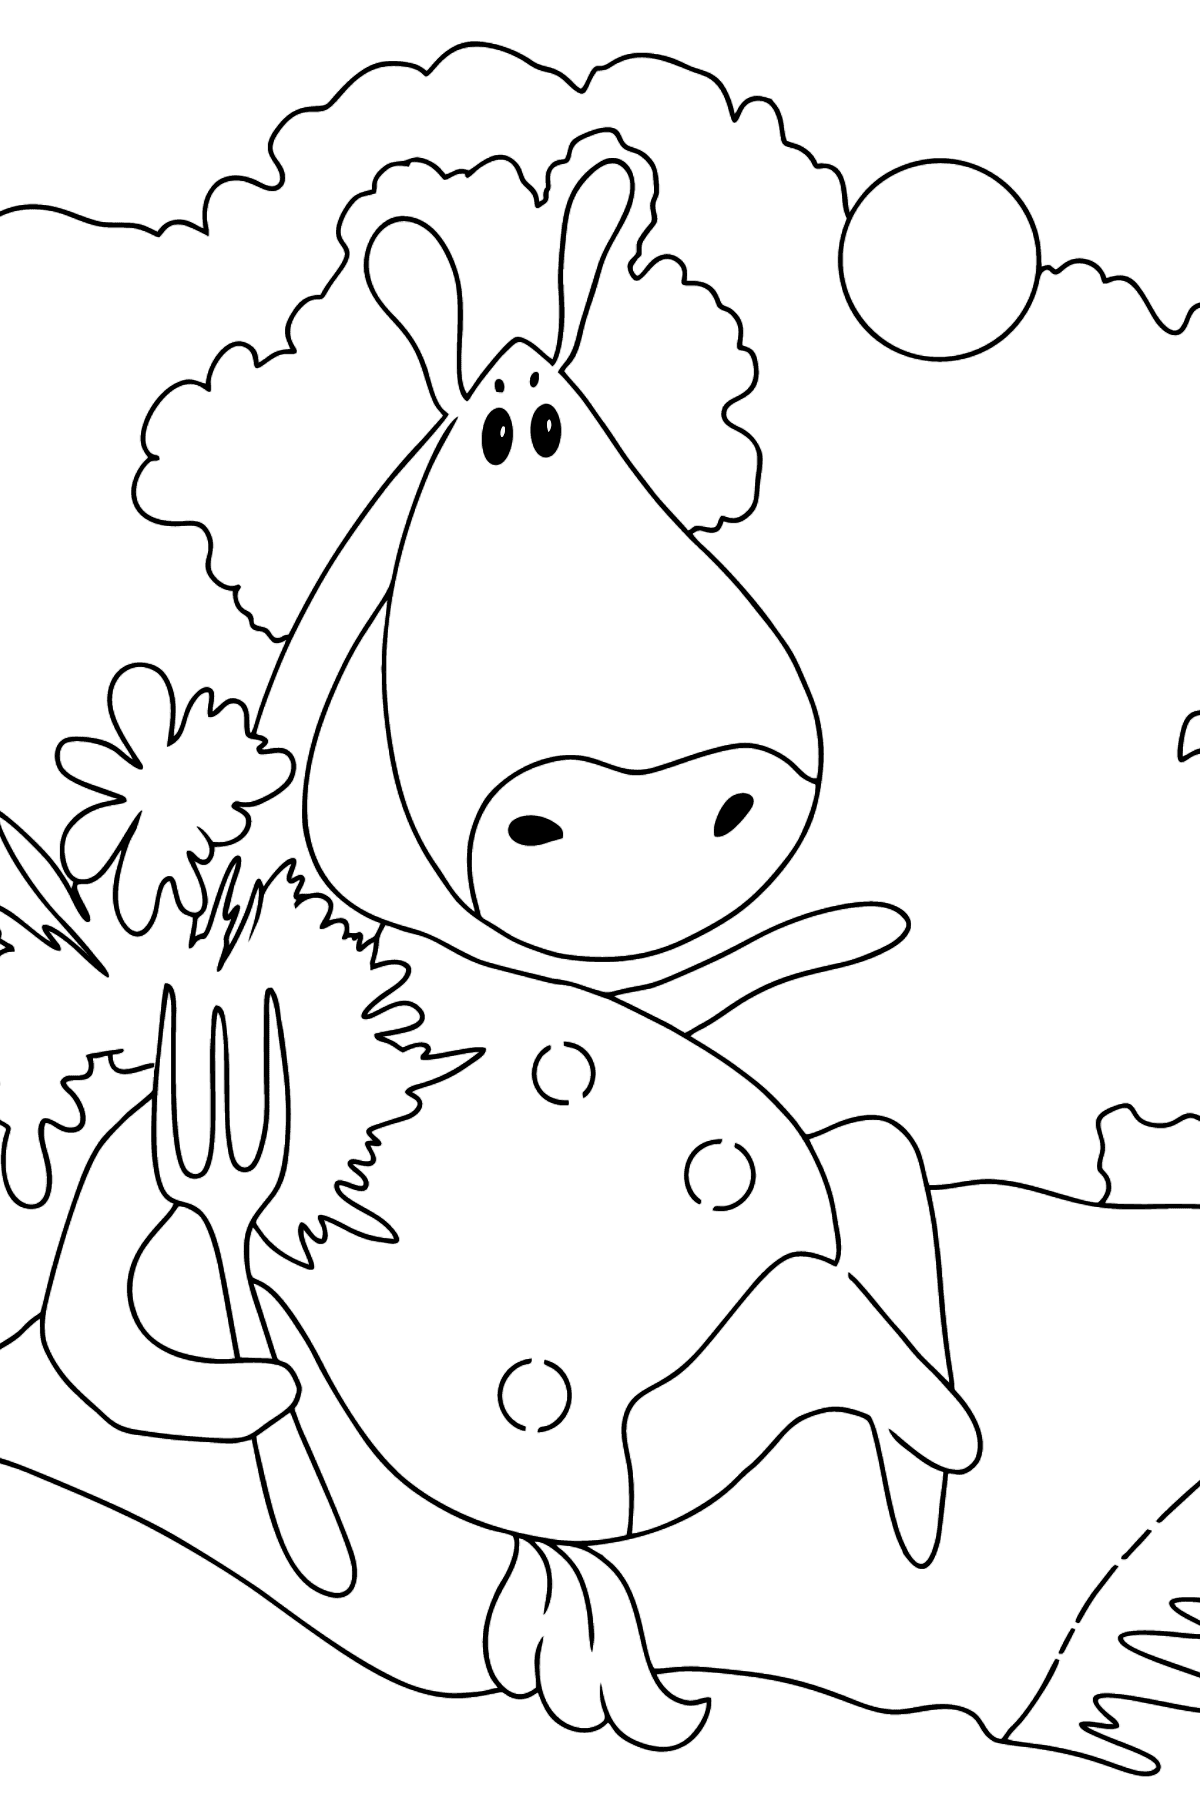 Tegning til fargelegging magisk hest (enkelt) - Tegninger til fargelegging for barn